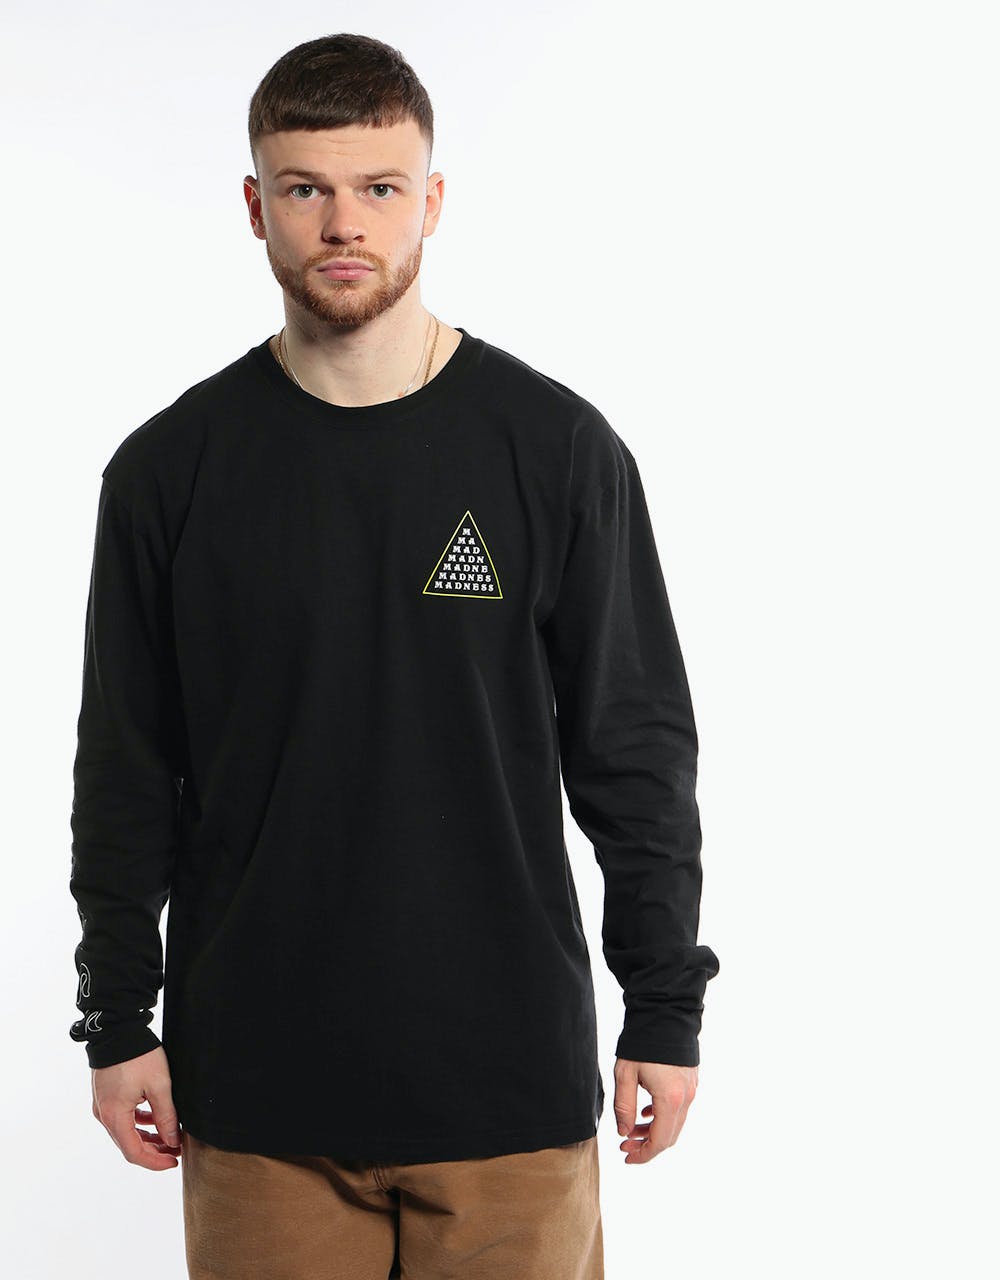 Madness Triangle Line L/S T-Shirt - True Black